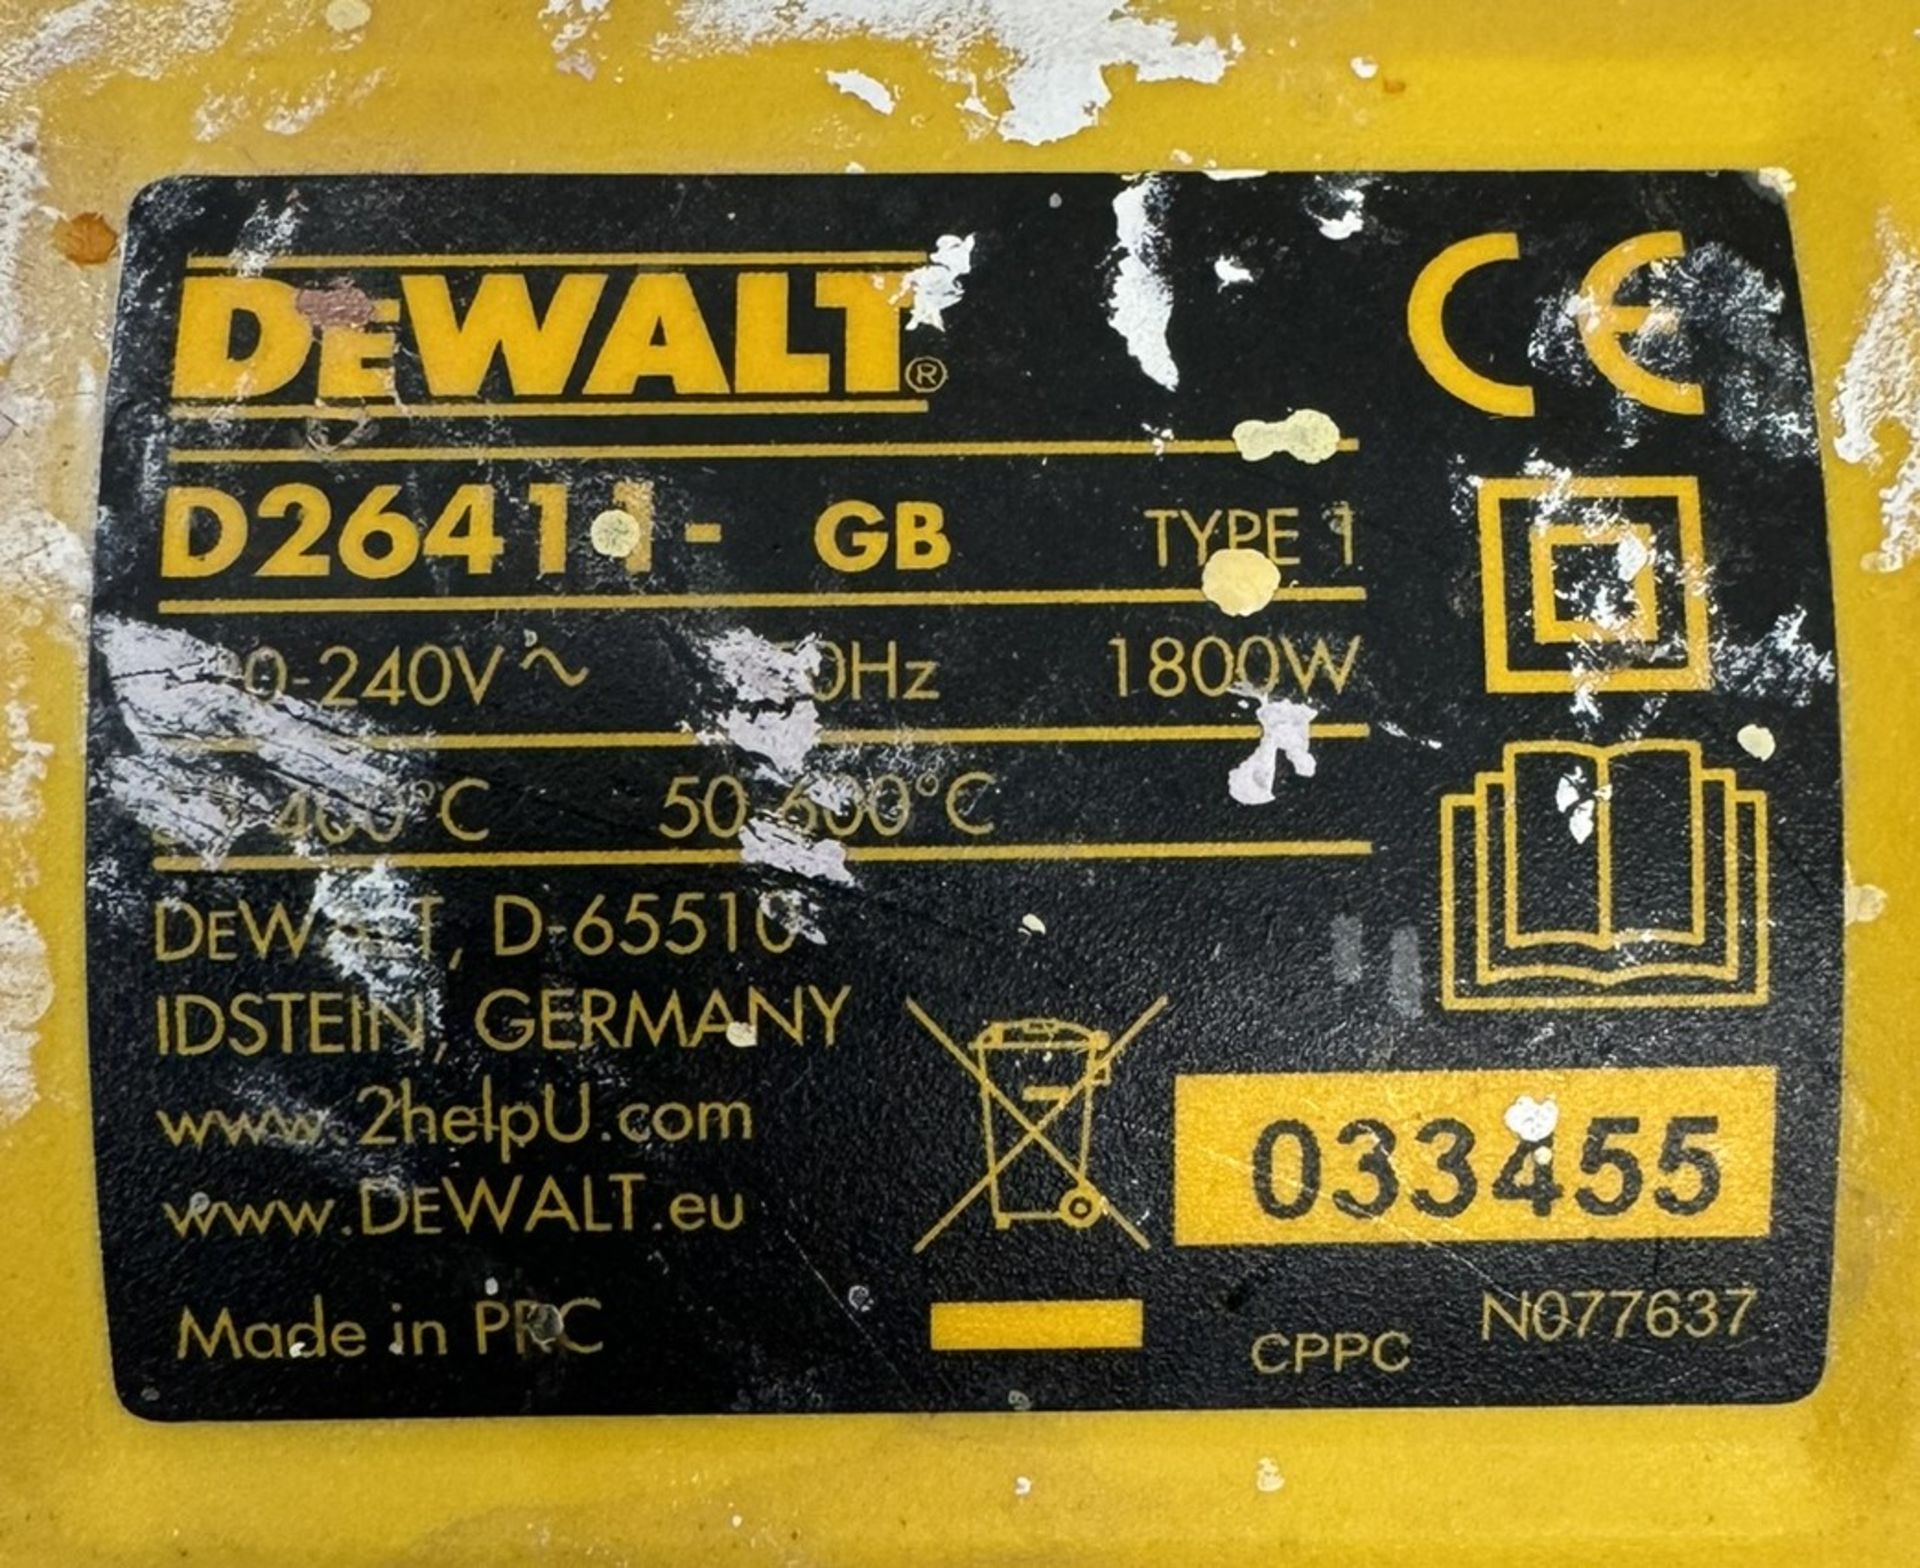 DeWALT D26411-GB 1800W Heat Gun - Bild 3 aus 4